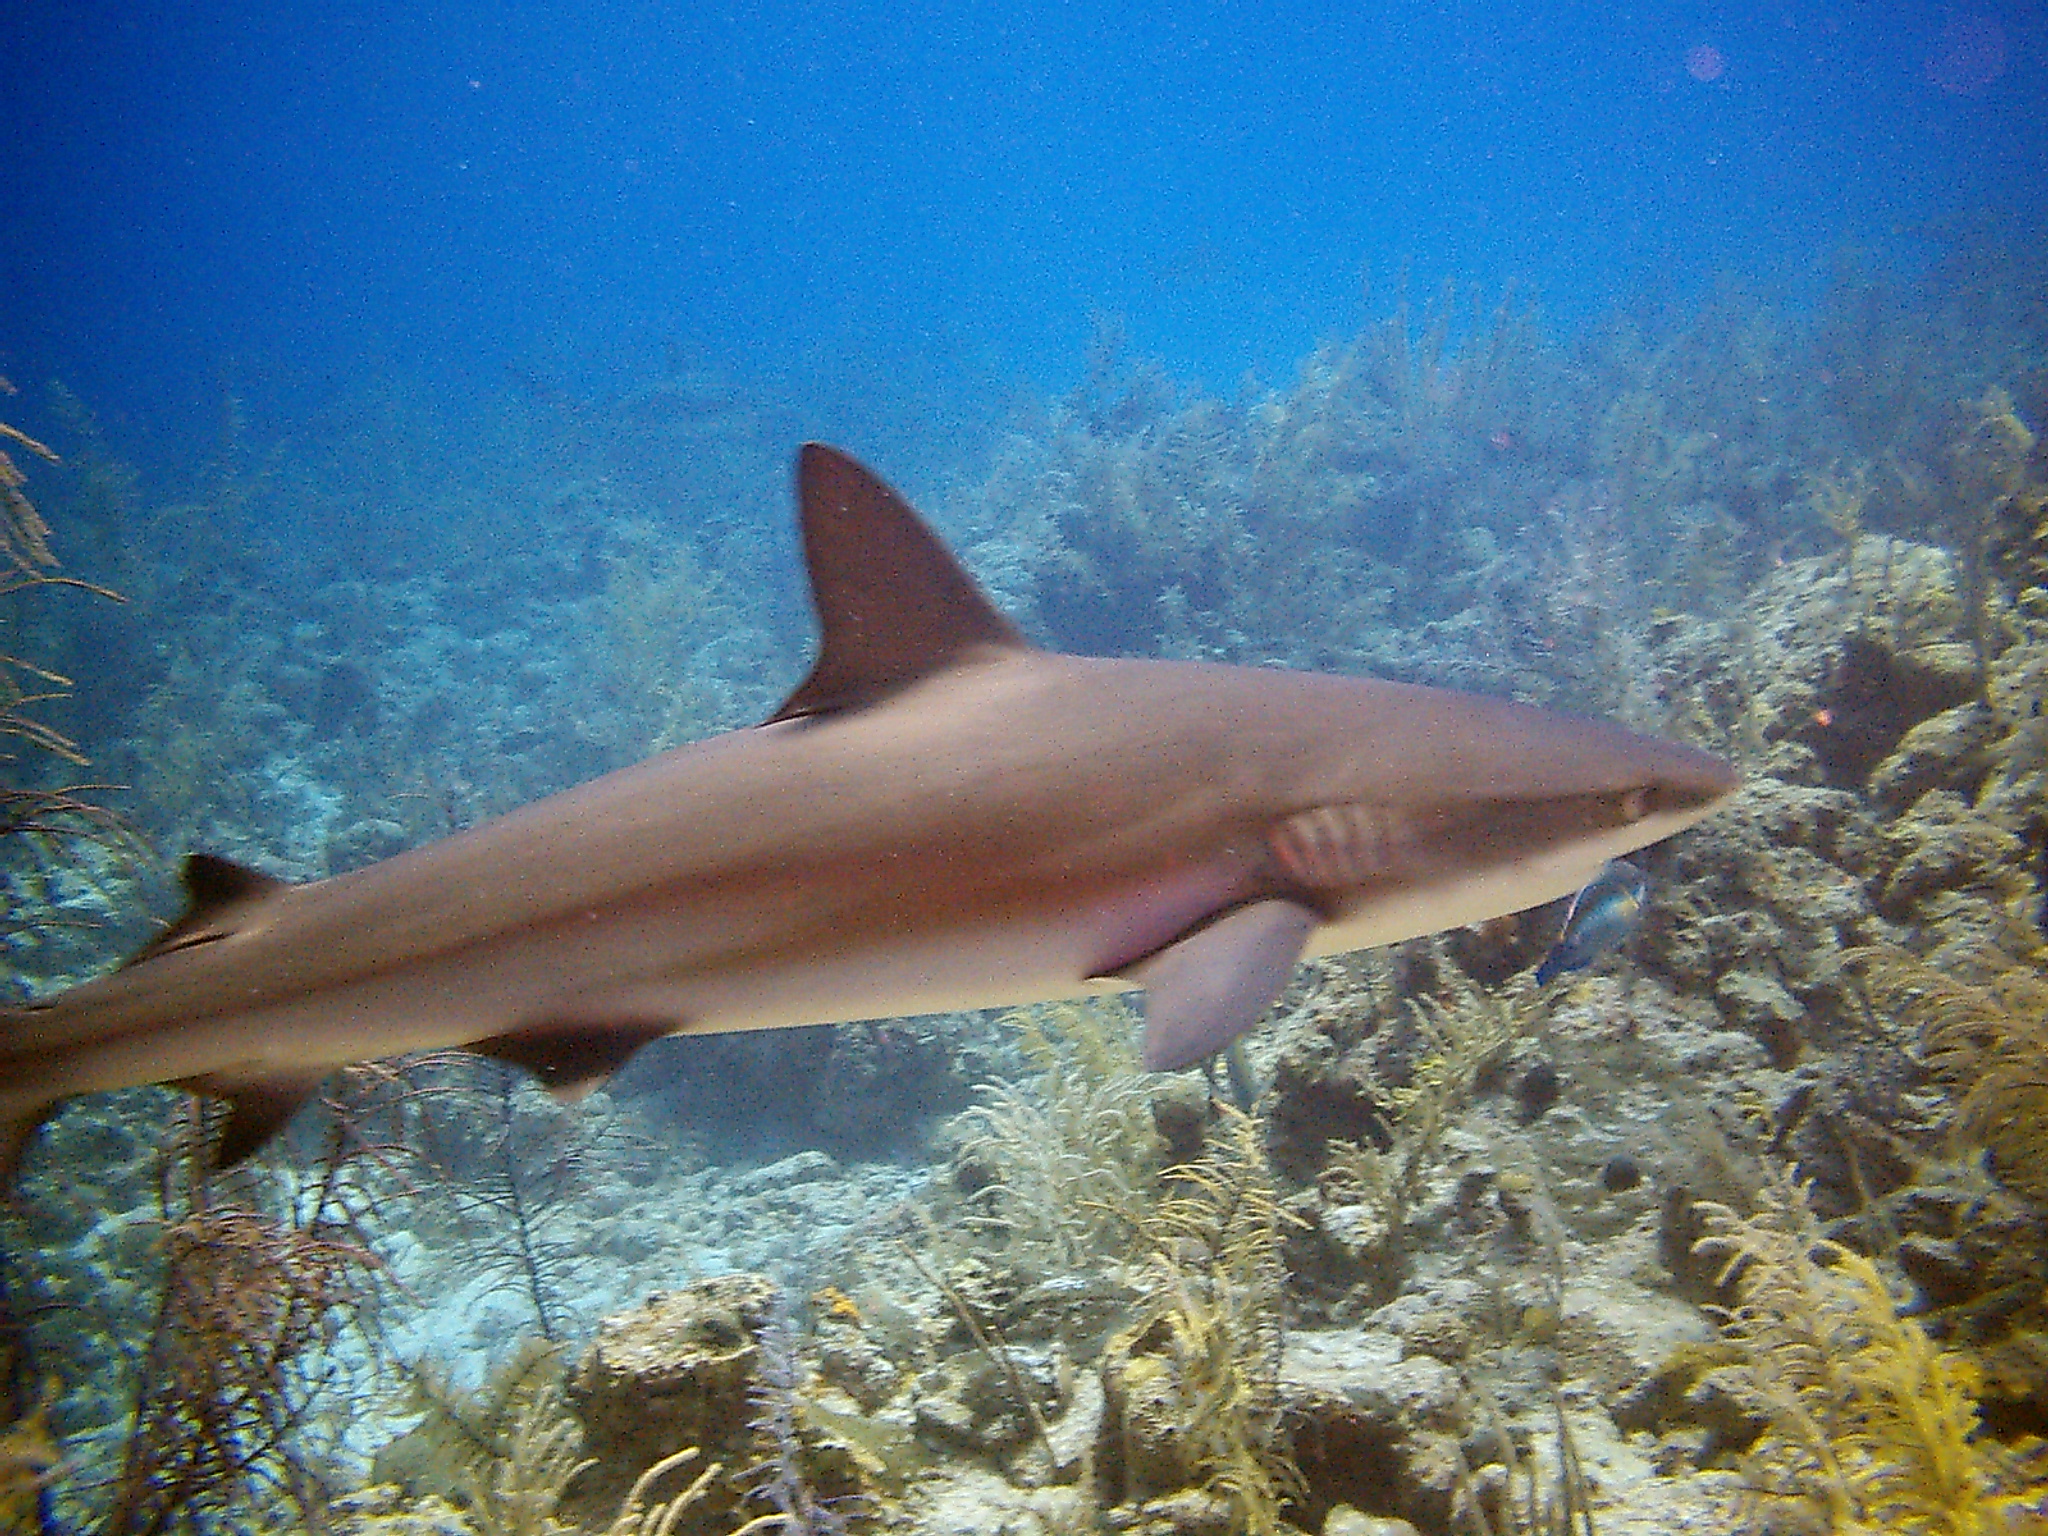 Shark near New Providence, The Bahamas